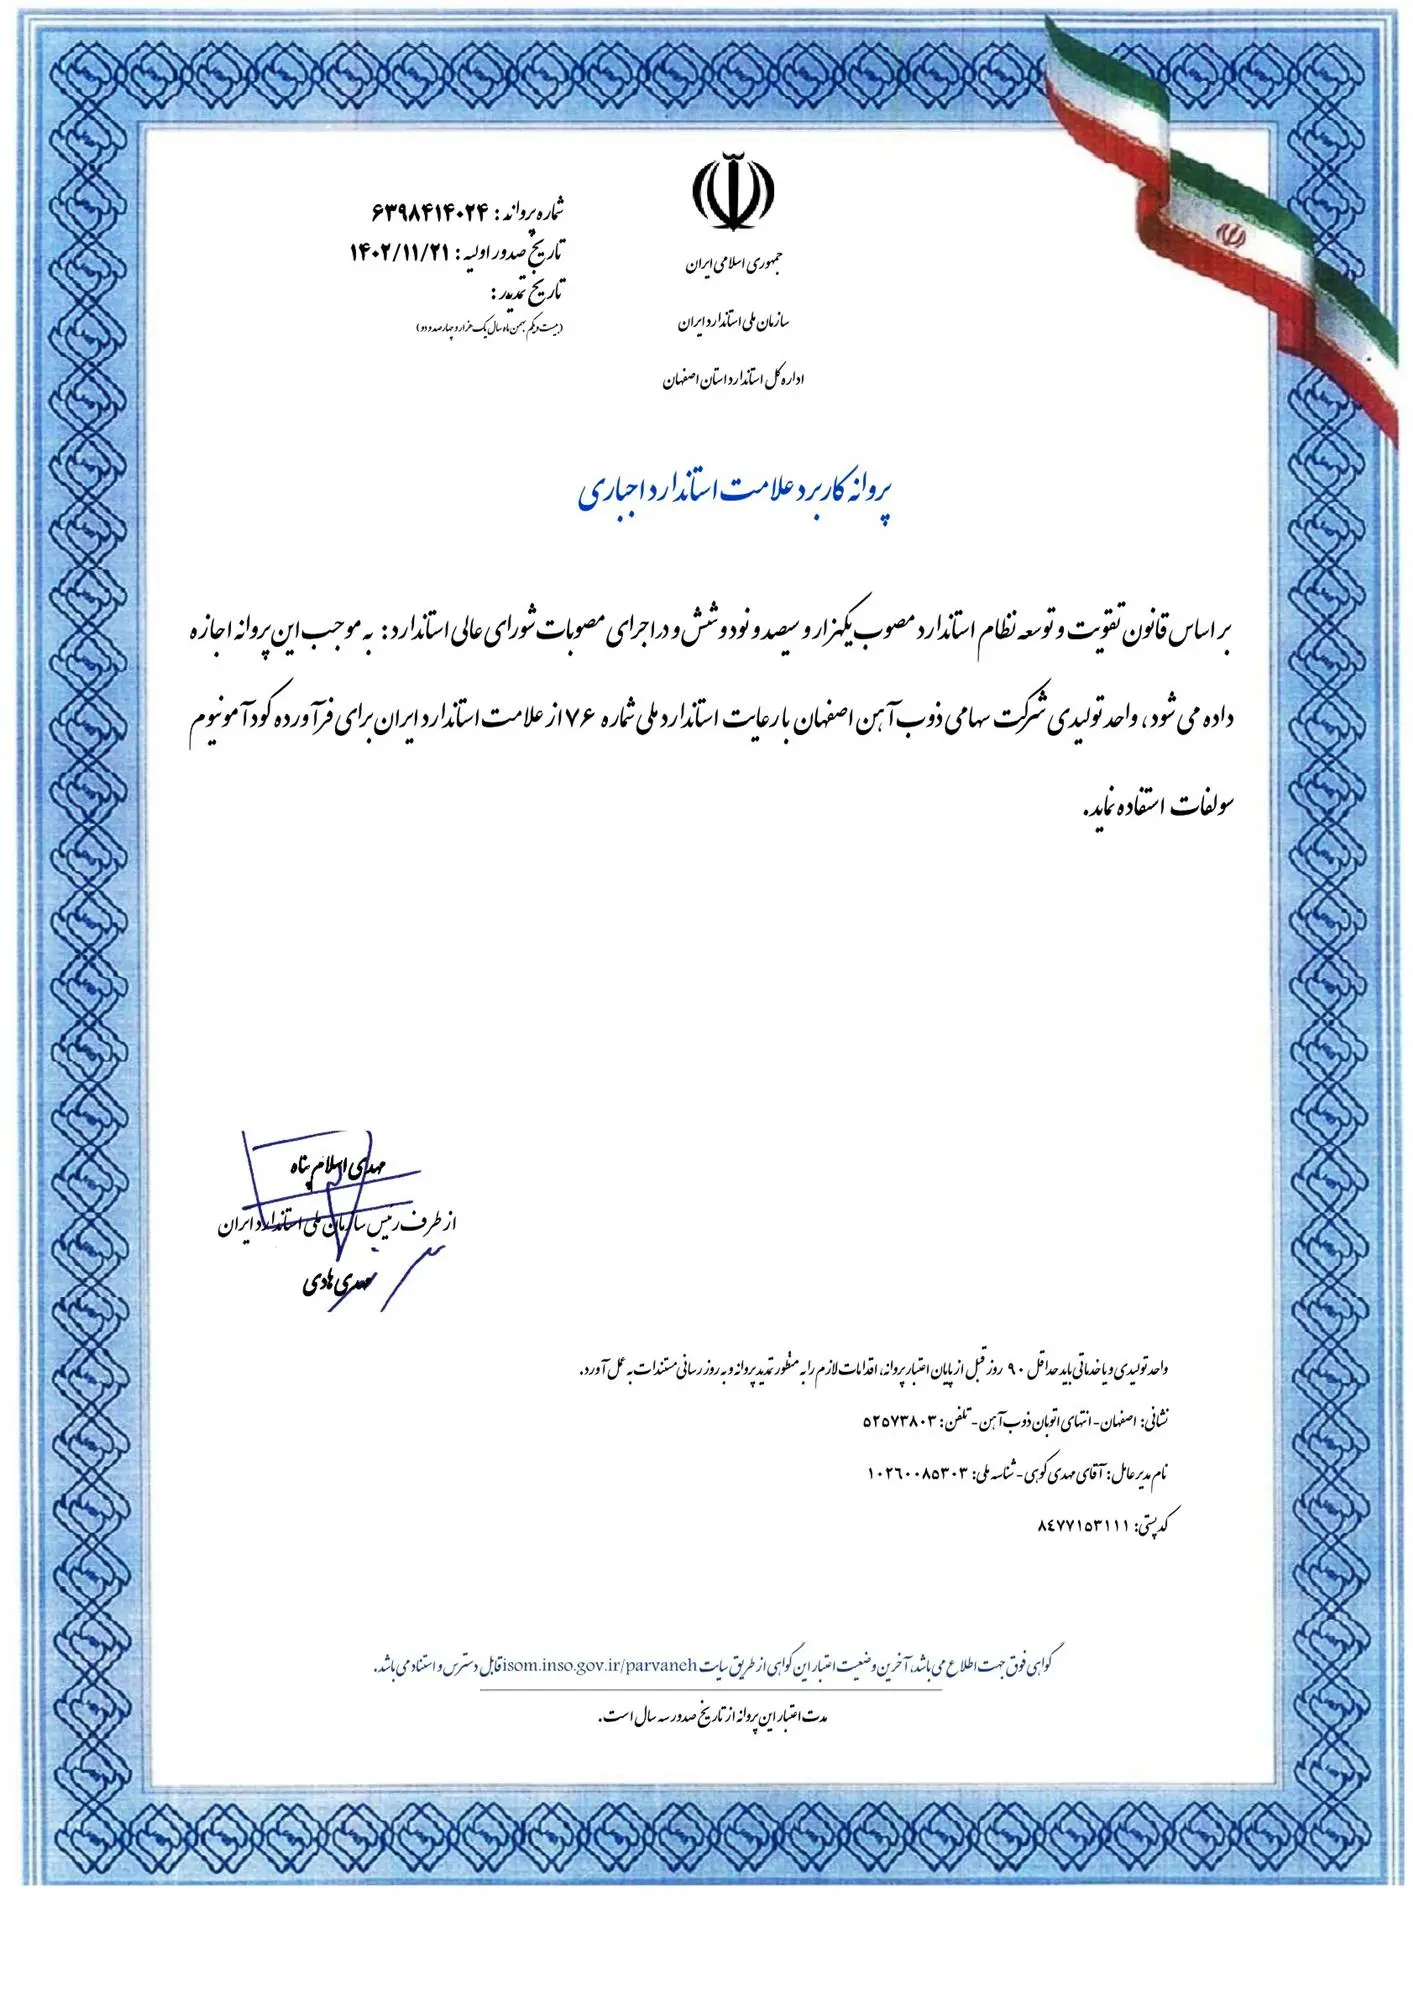 سولفات آمونیوم ذوب آهن اصفهان پروانه کاربرد علامت استاندارد دریافت کرد